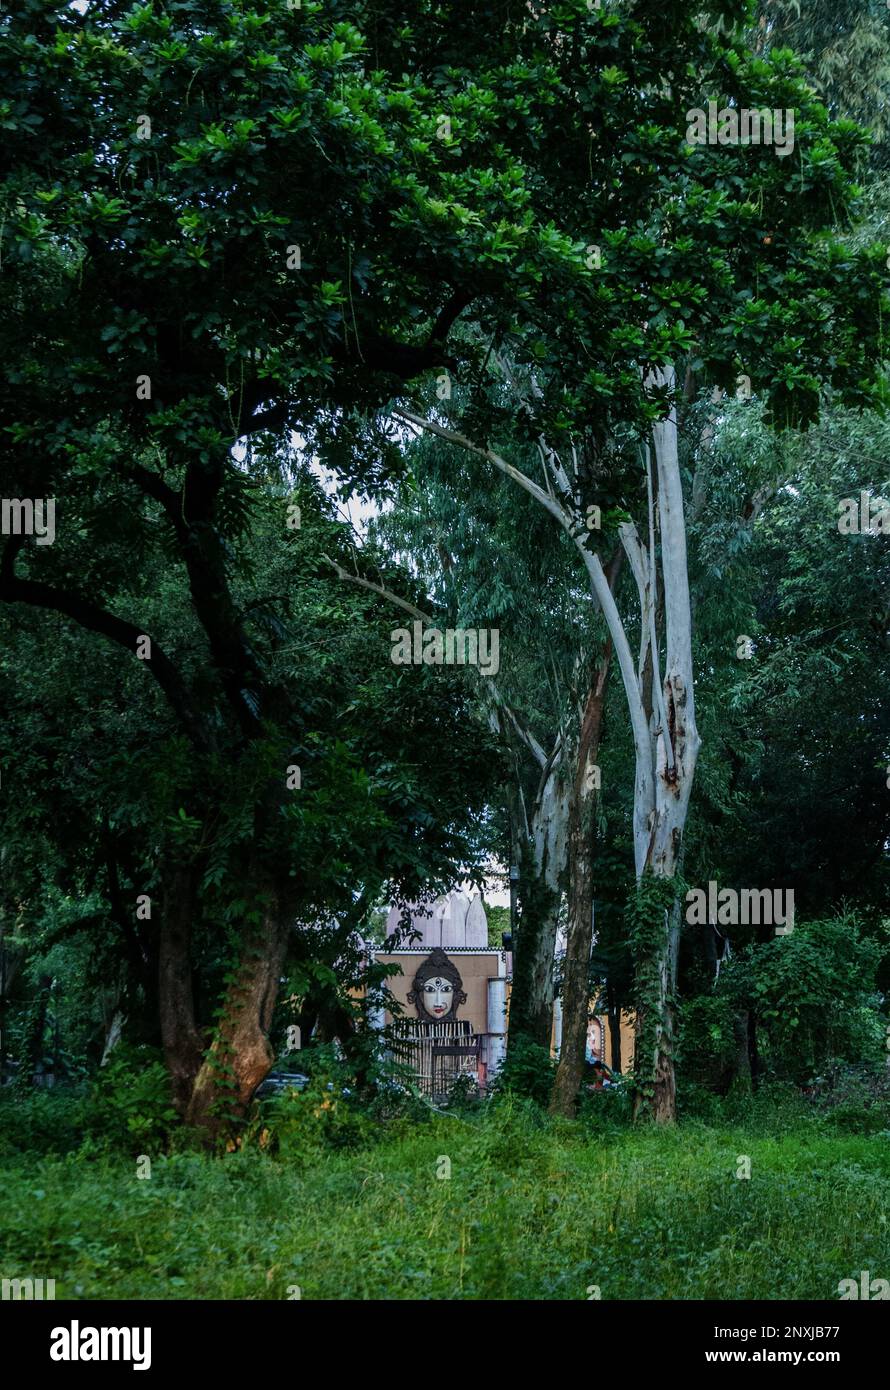 Photo naturelle de la ville de Dhaka au Bangladesh. Quelques oiseaux dans un arbre. Banque D'Images